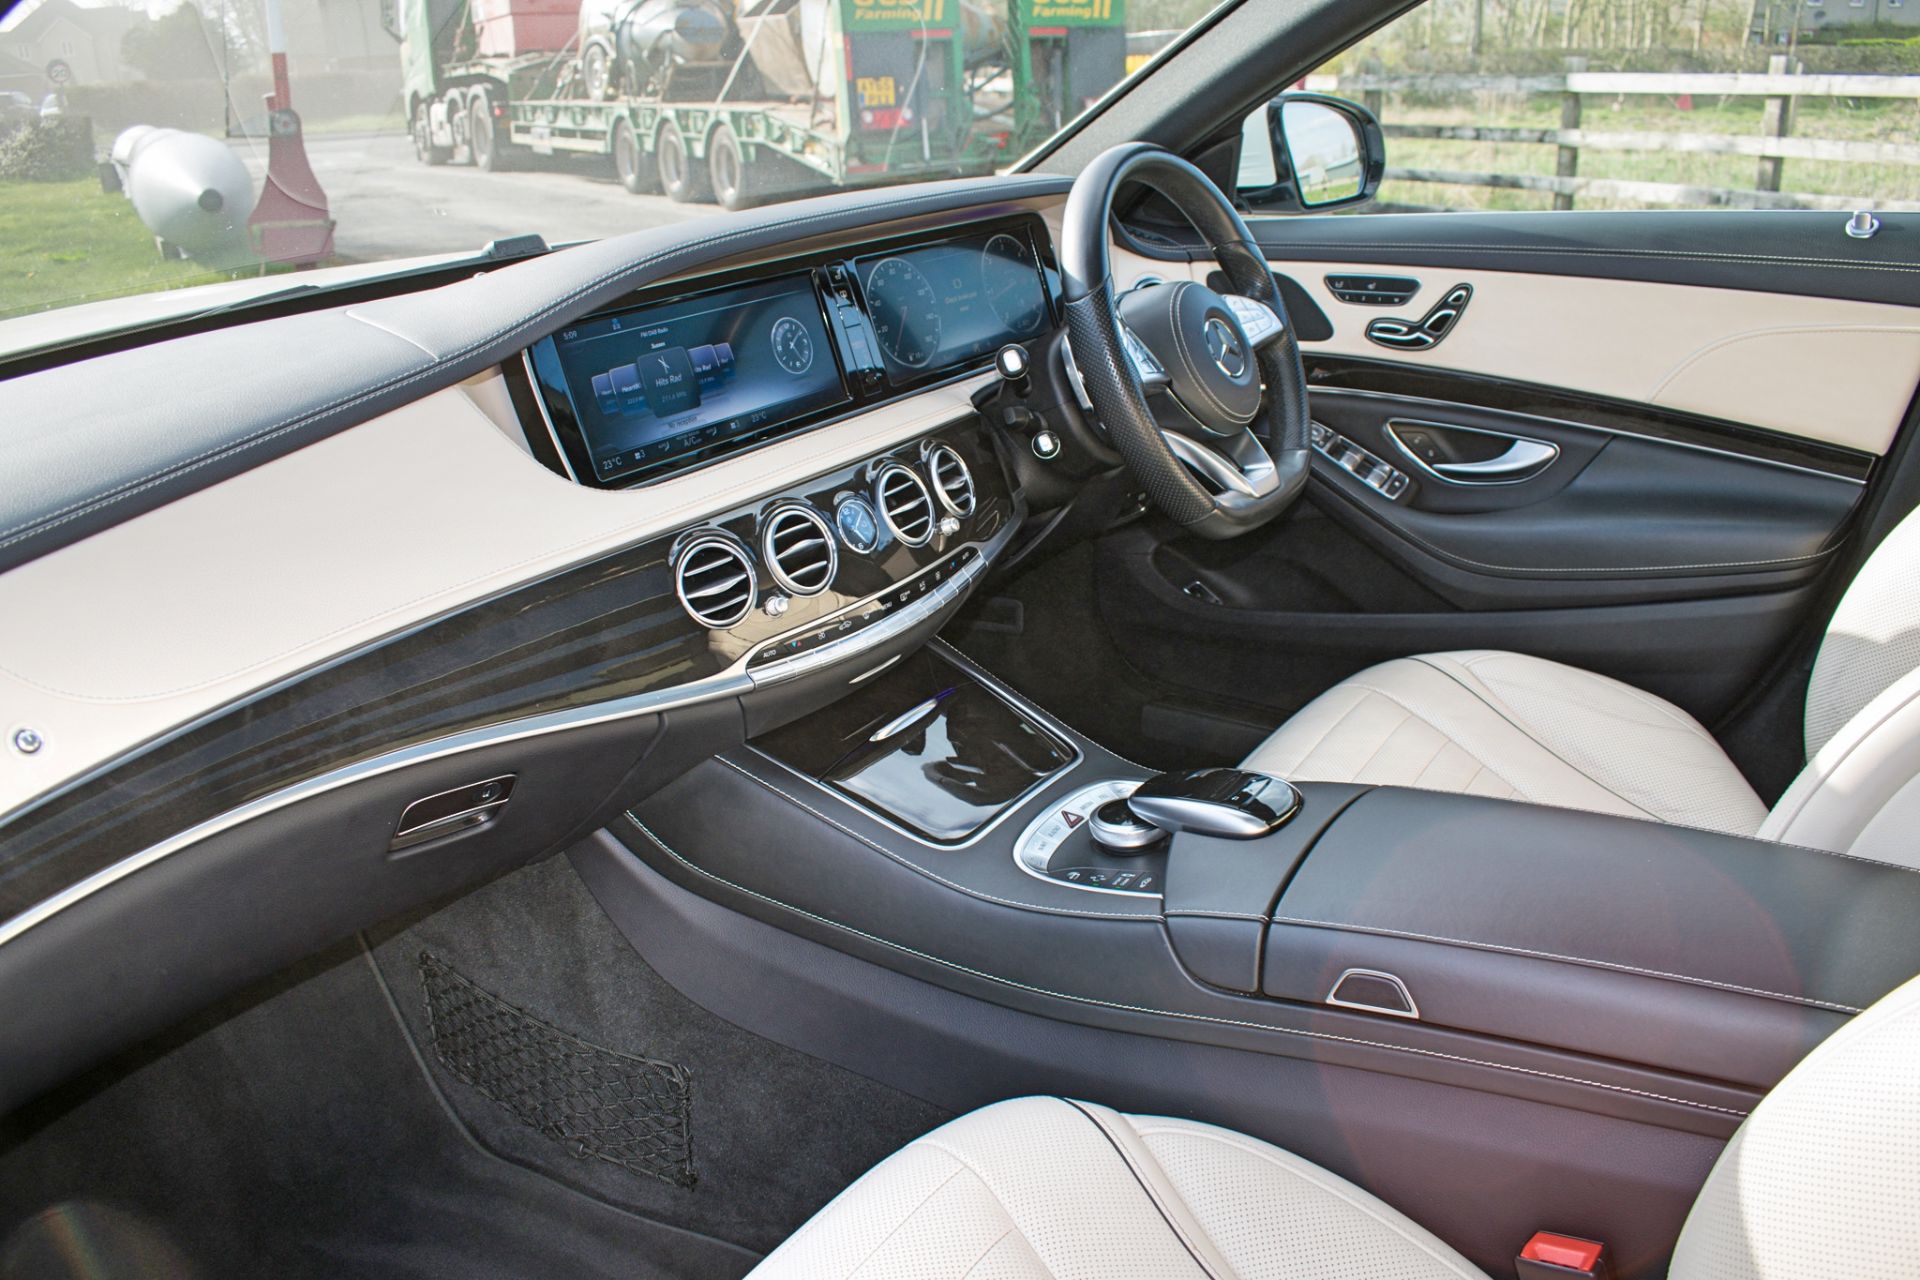 Mercedes Benz S350D L Executive Premium AMG Line 4 door saloon car - Image 10 of 13